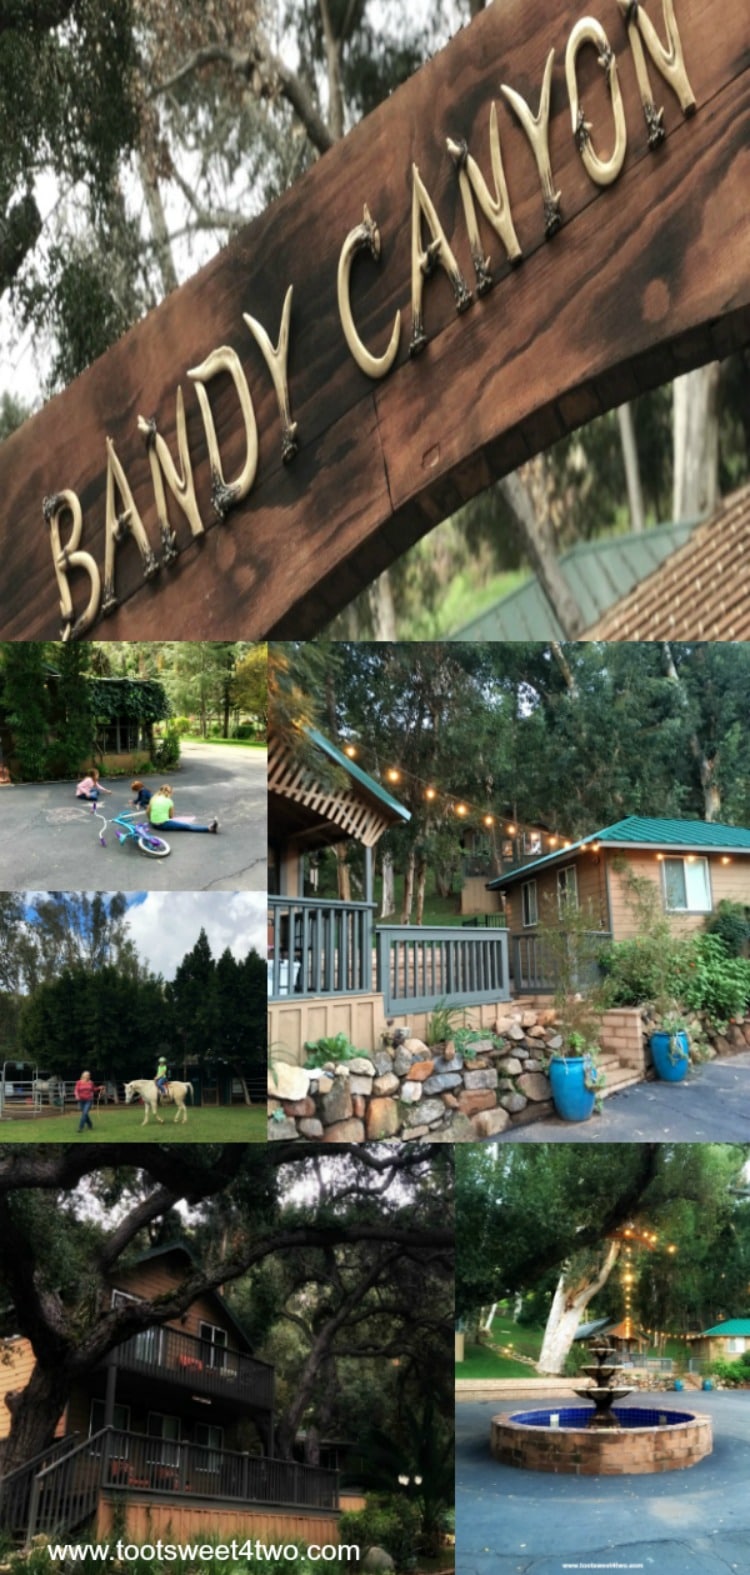 The Ranch at Bandy Canyon postcard